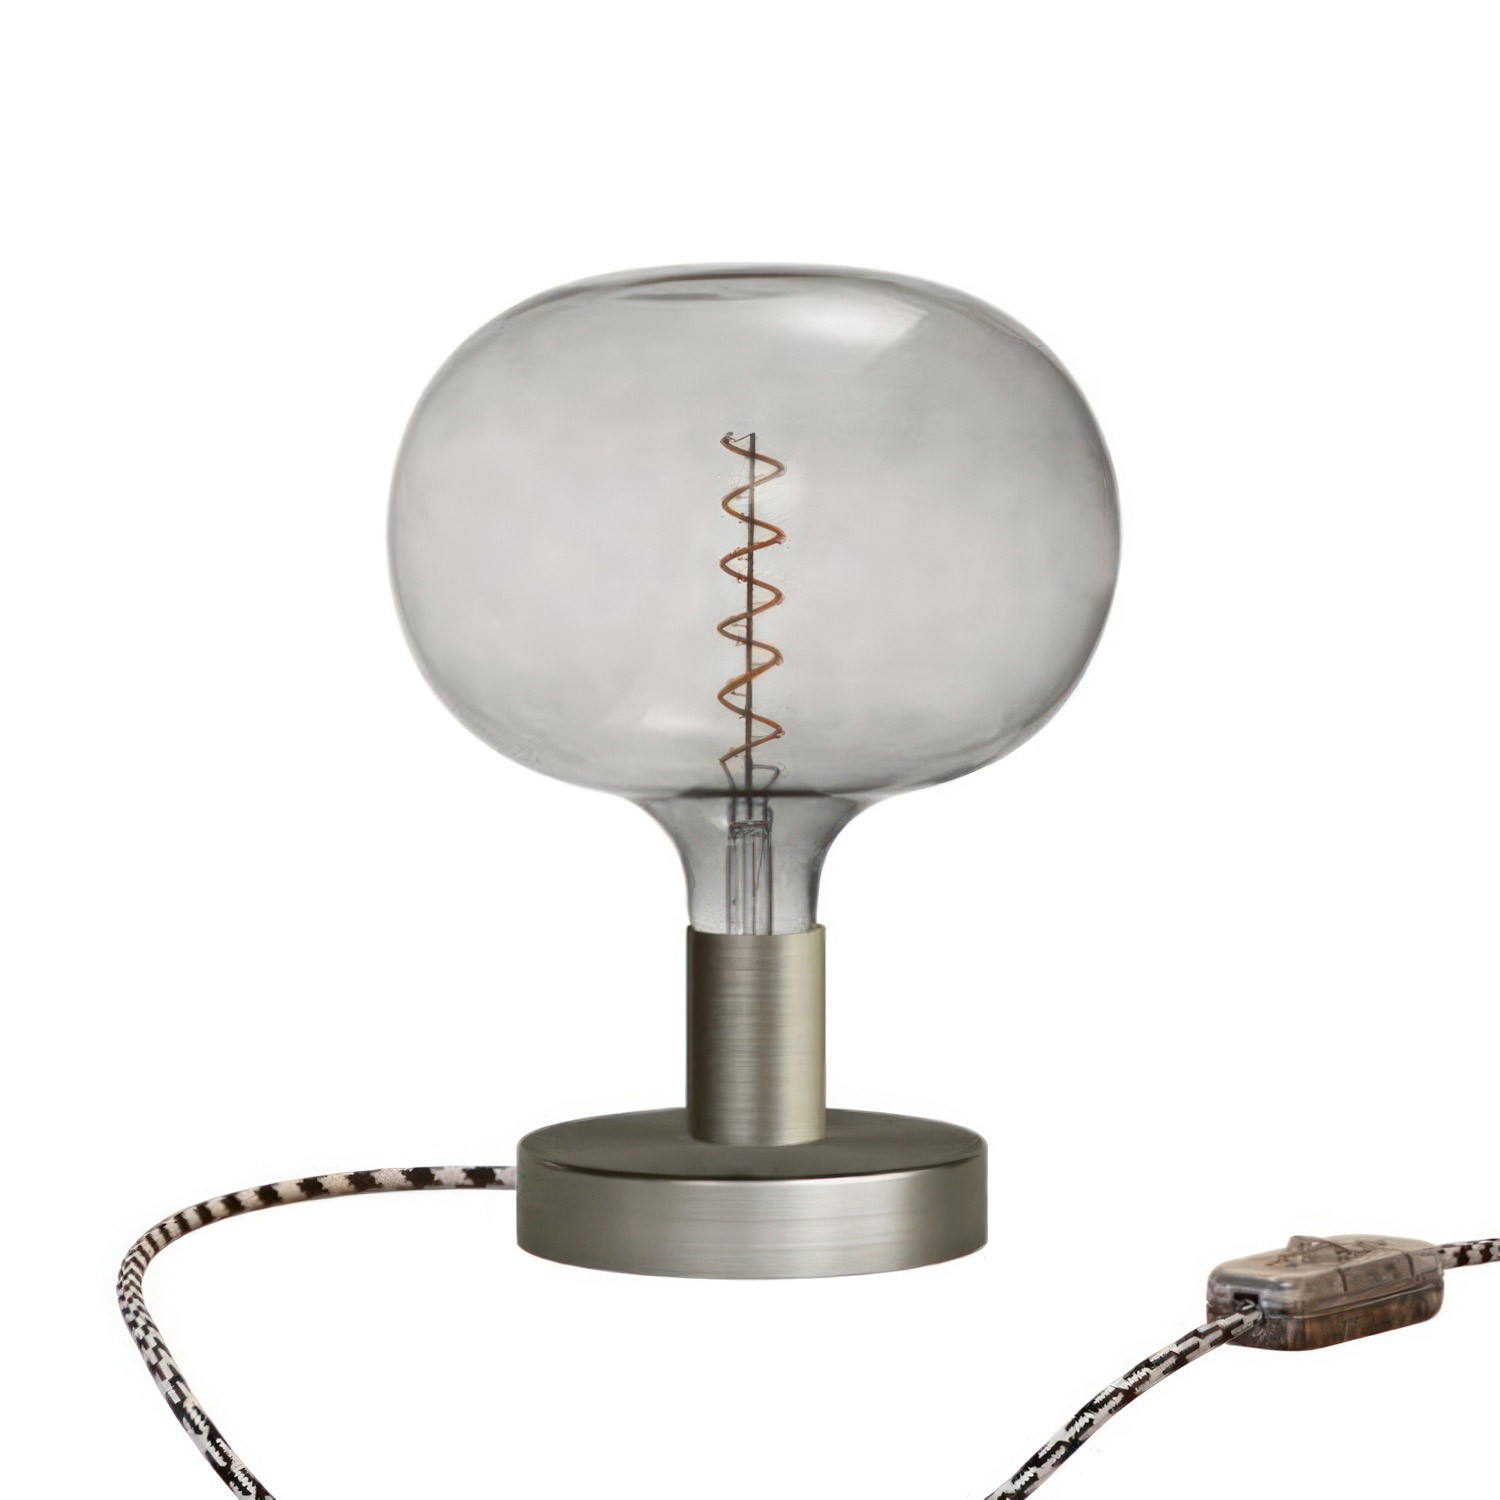 Lámpara de mesa metálica Posaluce Cobble con clavija de 2 polos